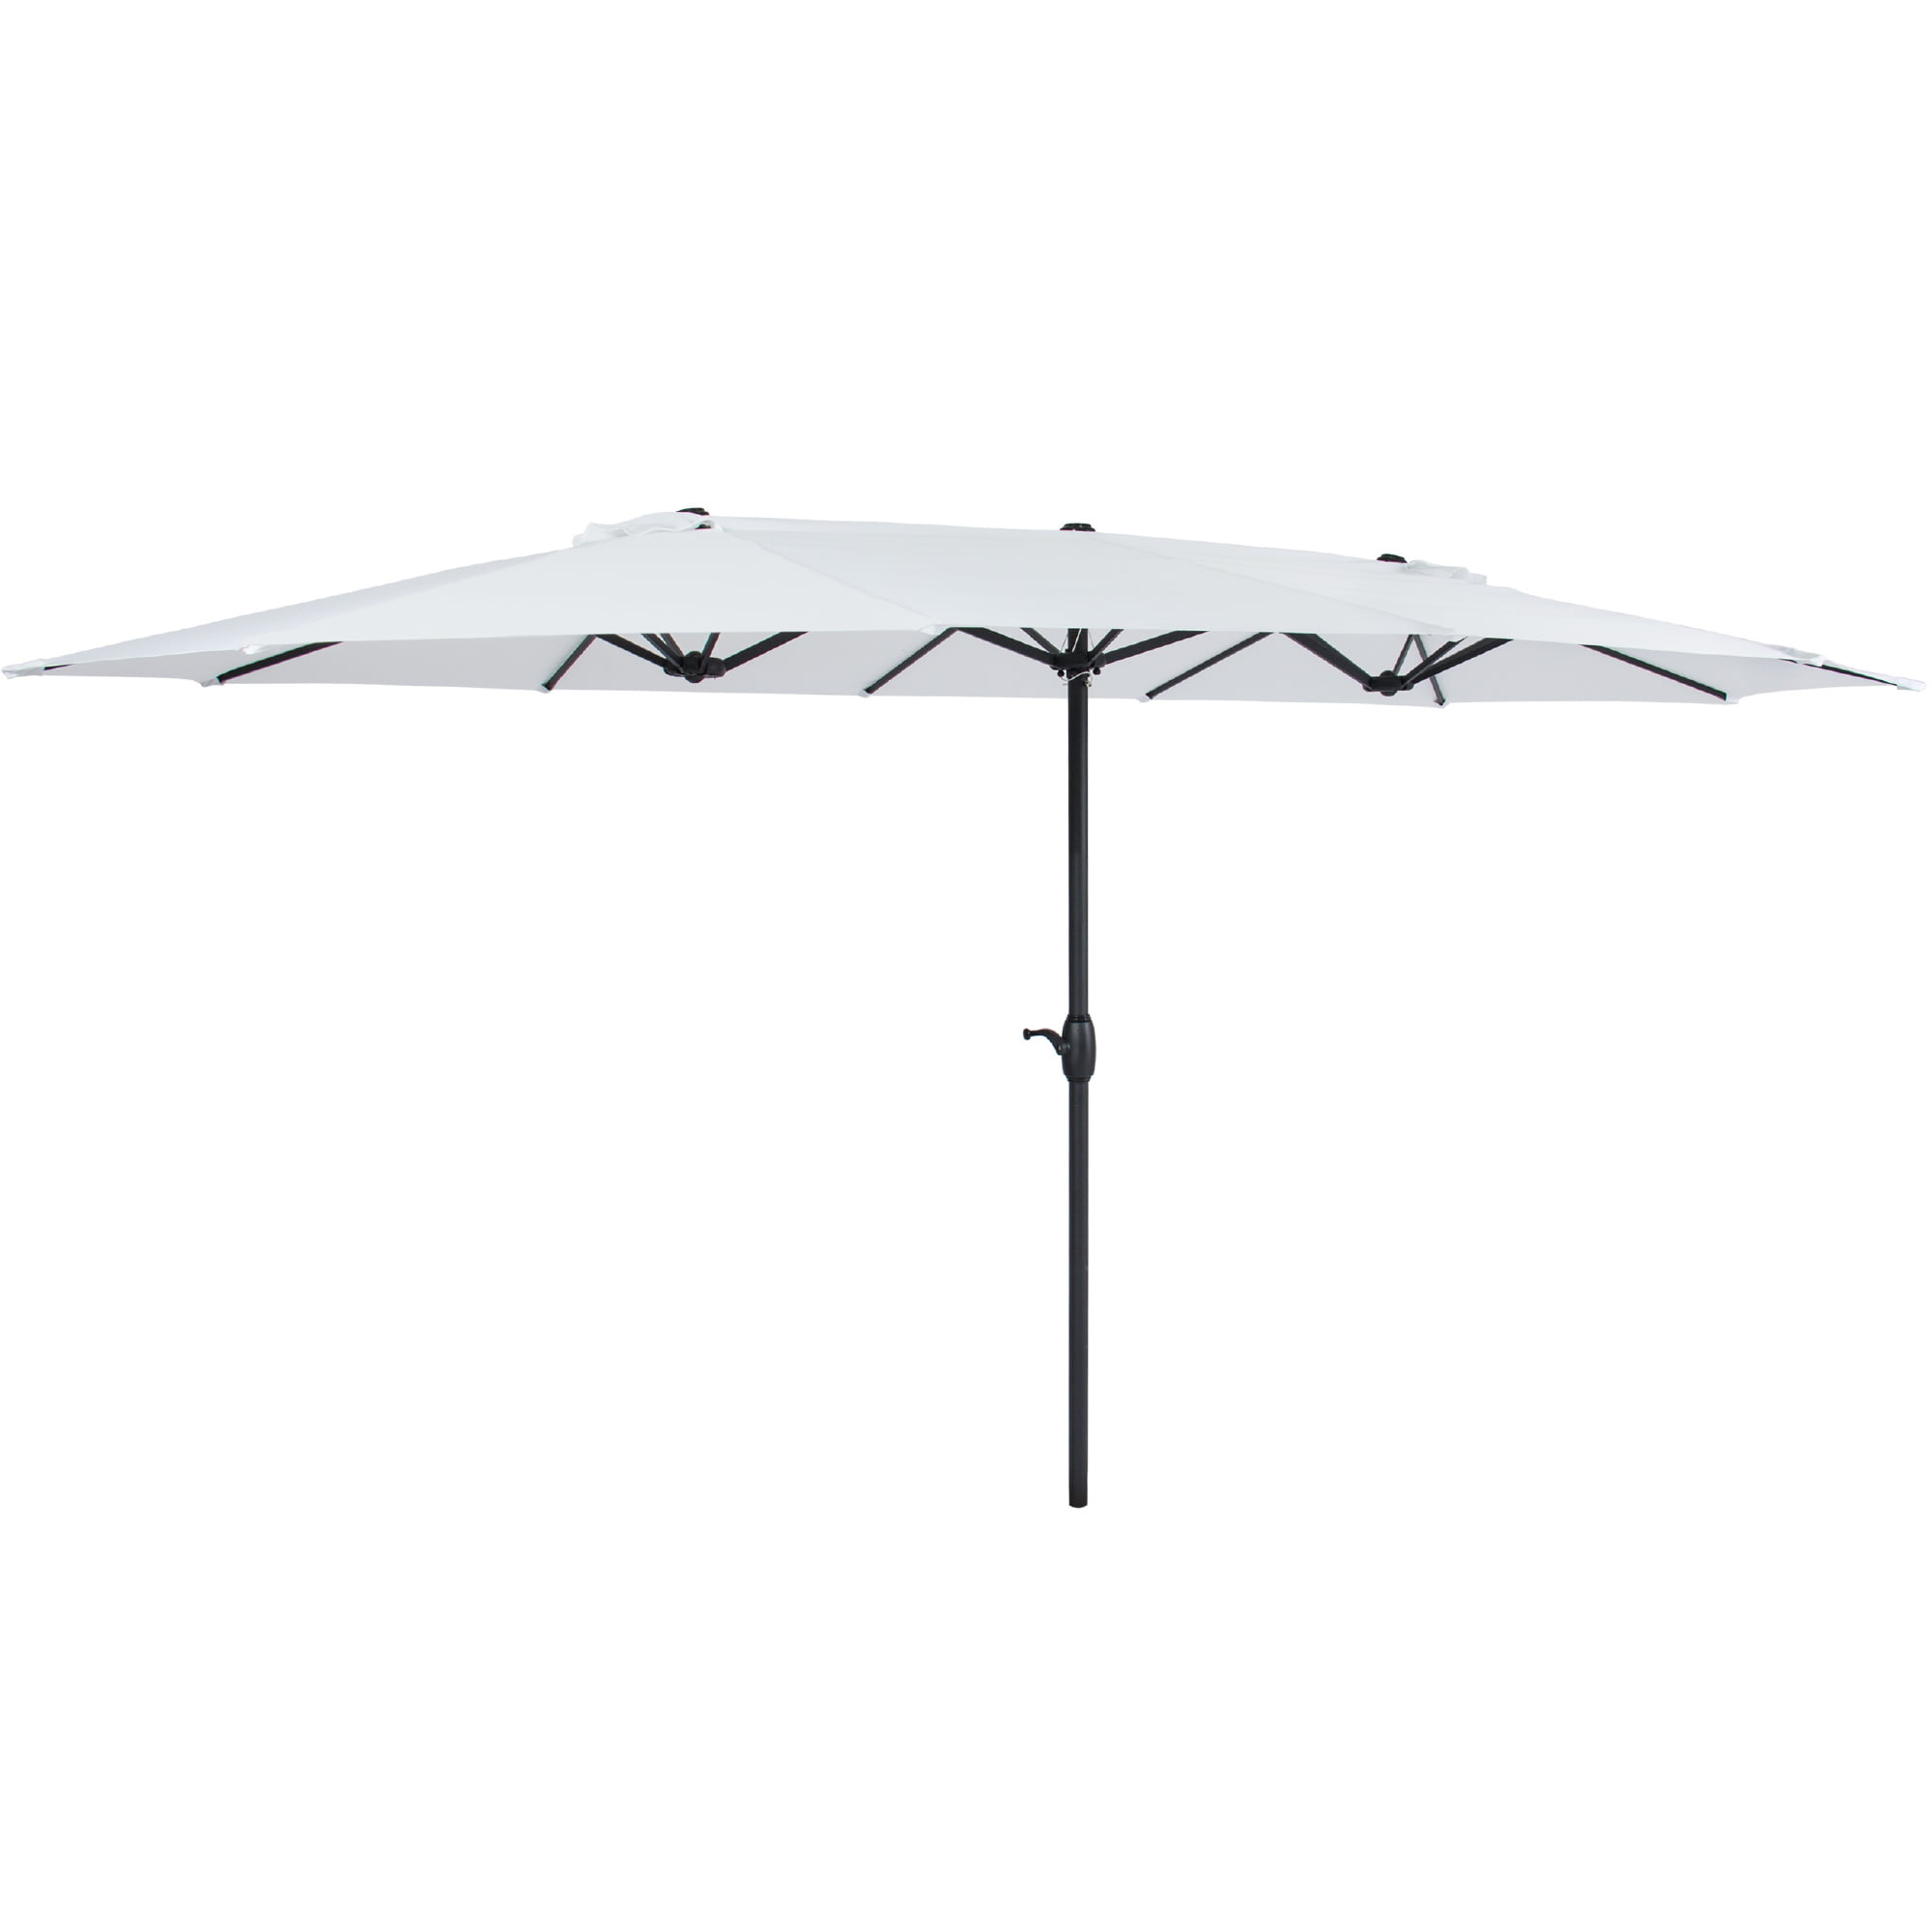 Details about   California Umbrella 9' Venture Series Patio Umbrella With Bronze Aluminum Pol... 